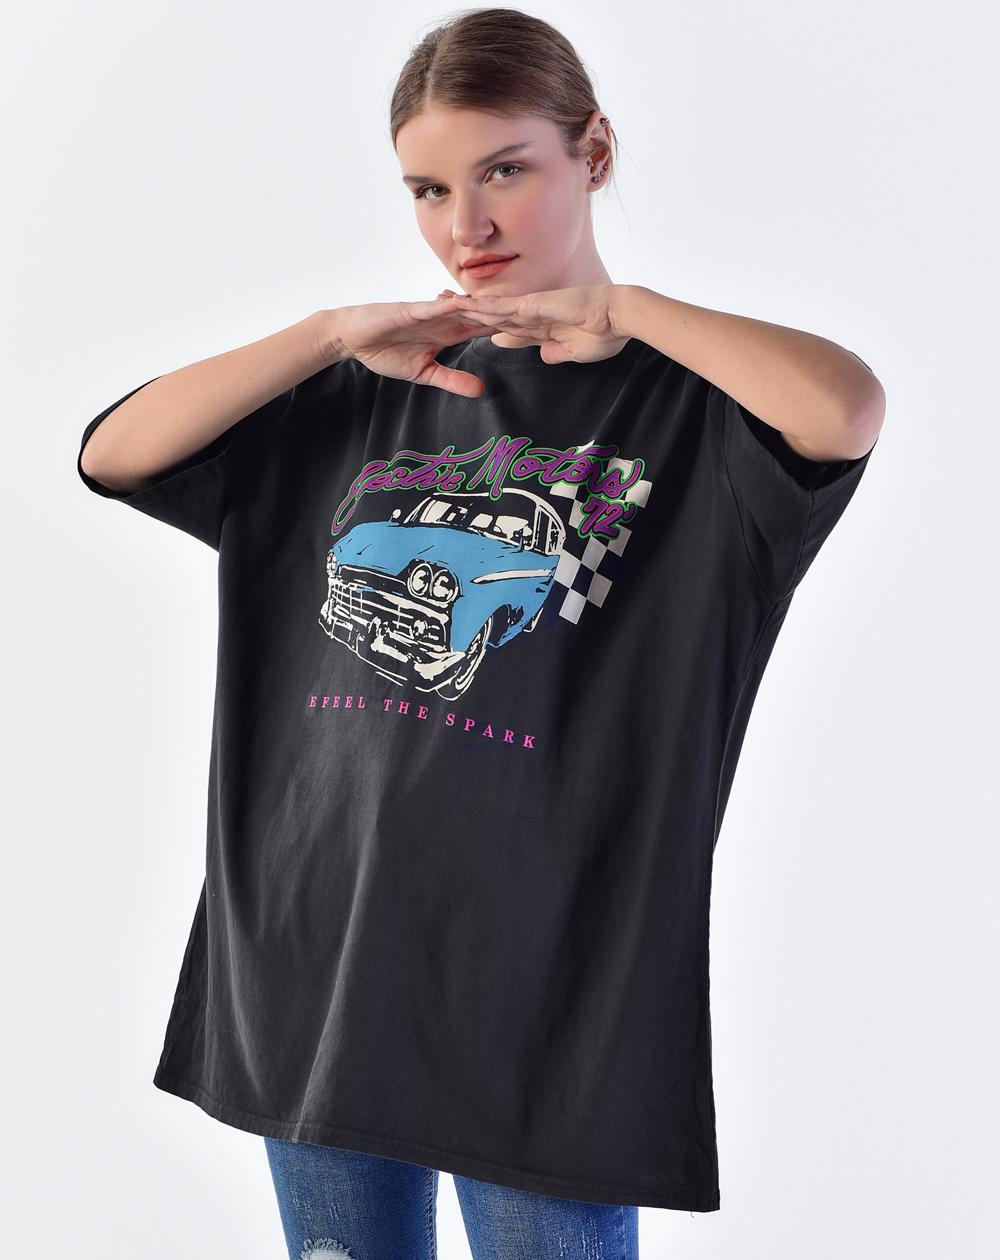 Füme Oversize Baskılı T-shirt P9344 – D5